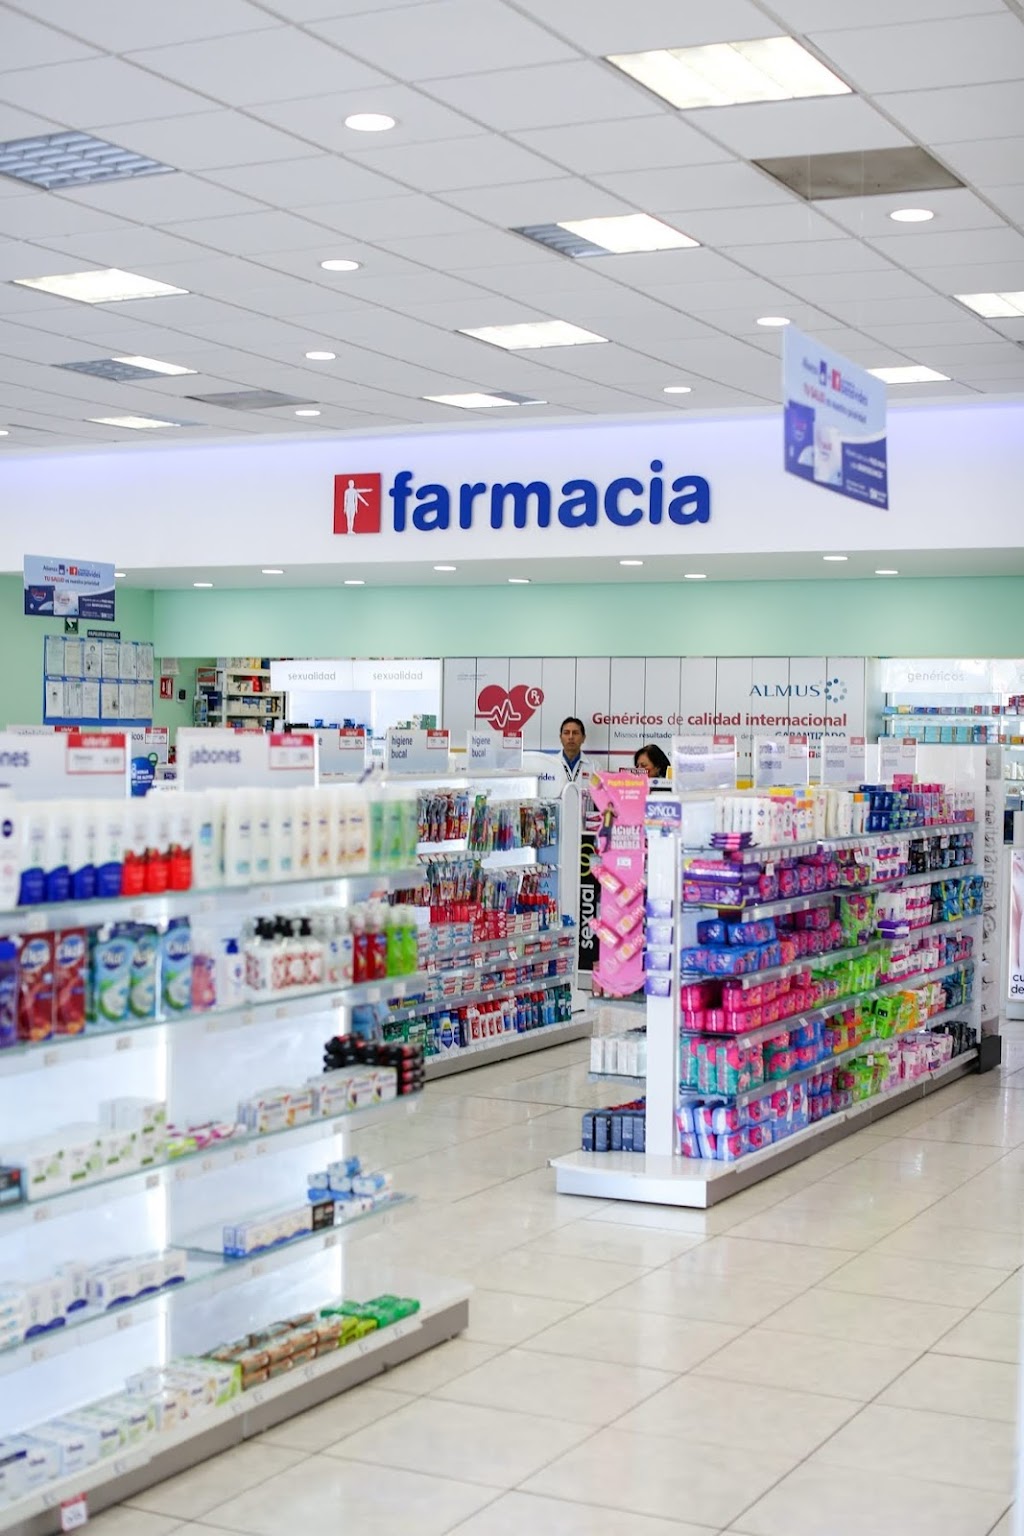 Farmacias Benavides | Loma Del Cielo 26202, Lomas Del Refugio, El Refugio, 22254 Tijuana, B.C., Mexico | Phone: 81 8126 0000